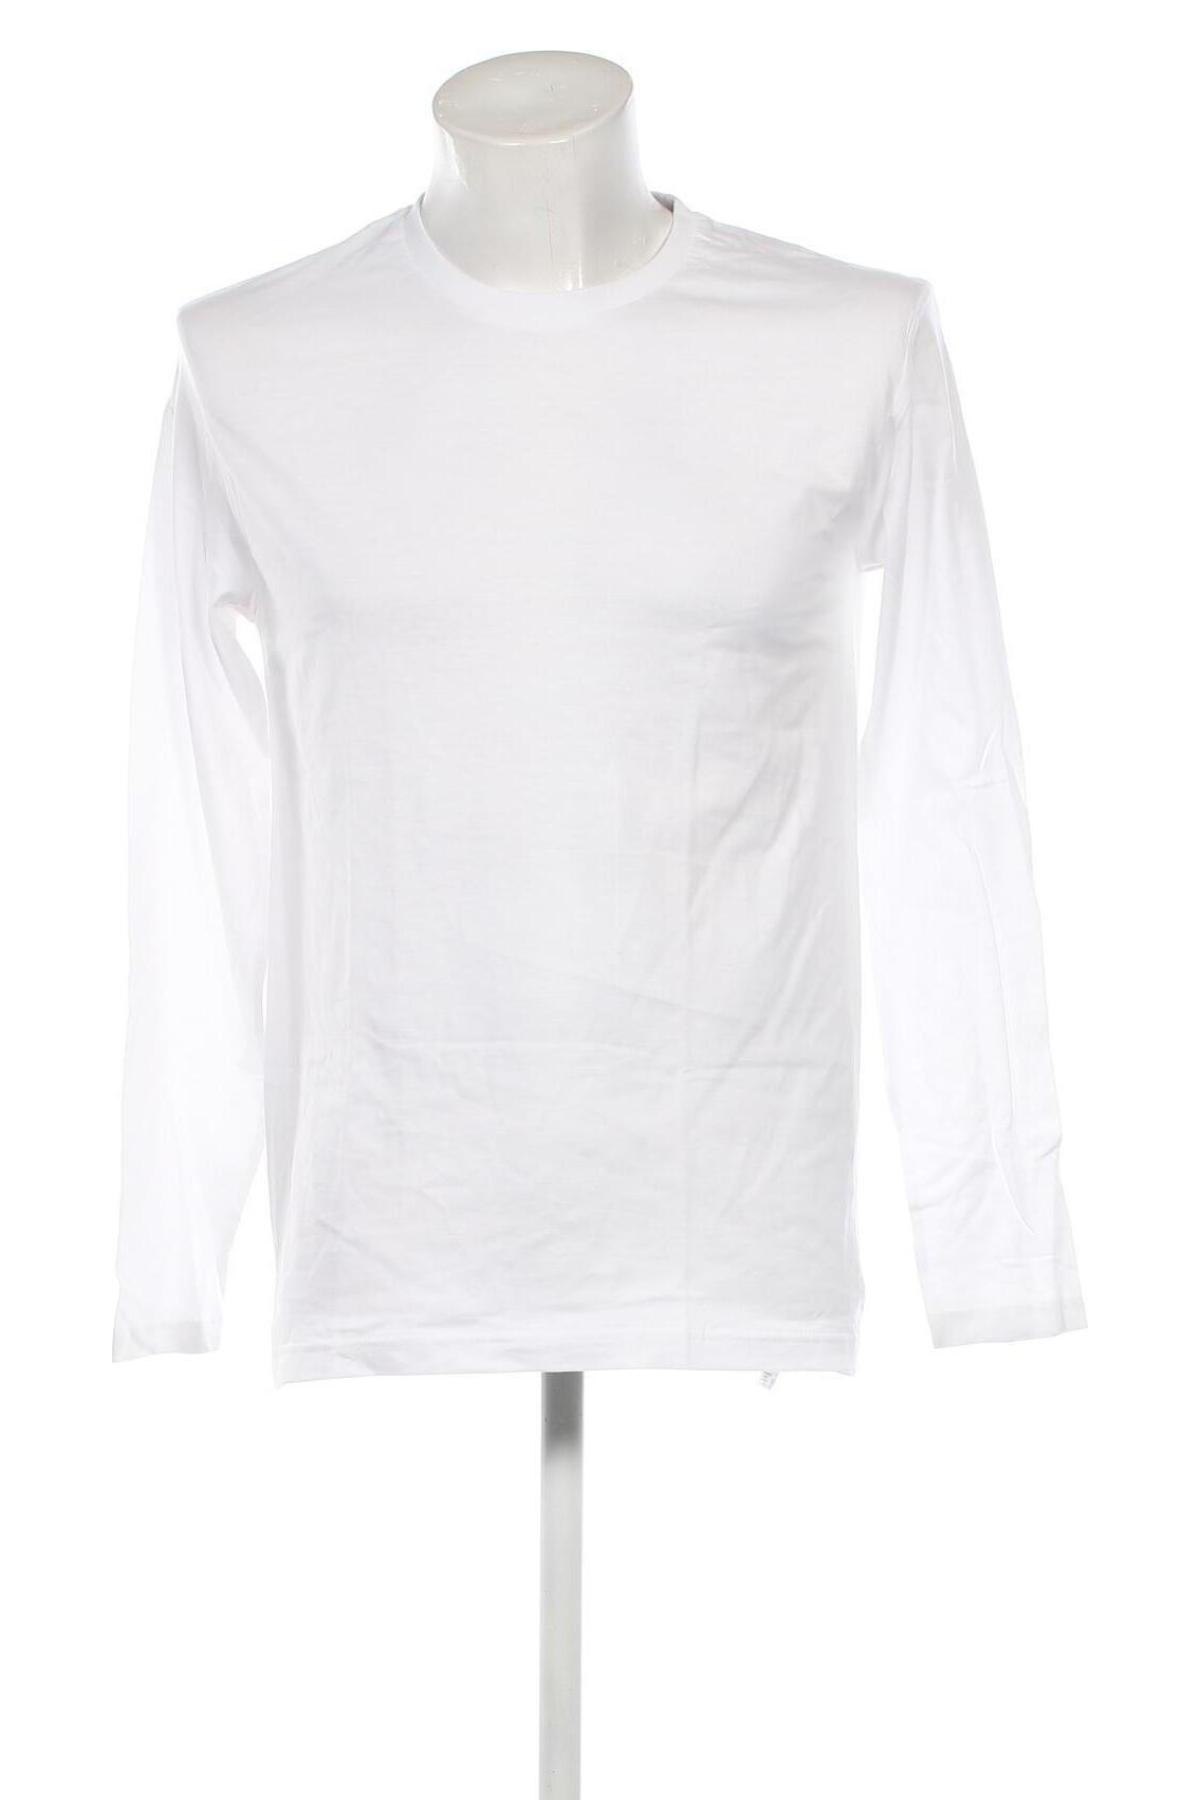 Herren Shirt Otto Kern, Größe L, Farbe Weiß, Preis 30,80 €